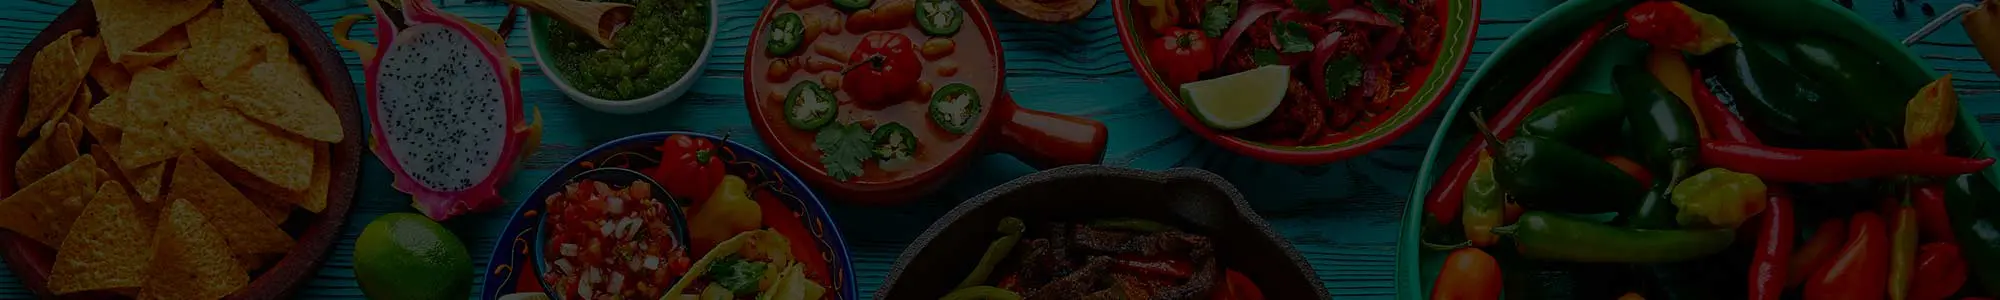 Caliente De Pere WI Mexican Food